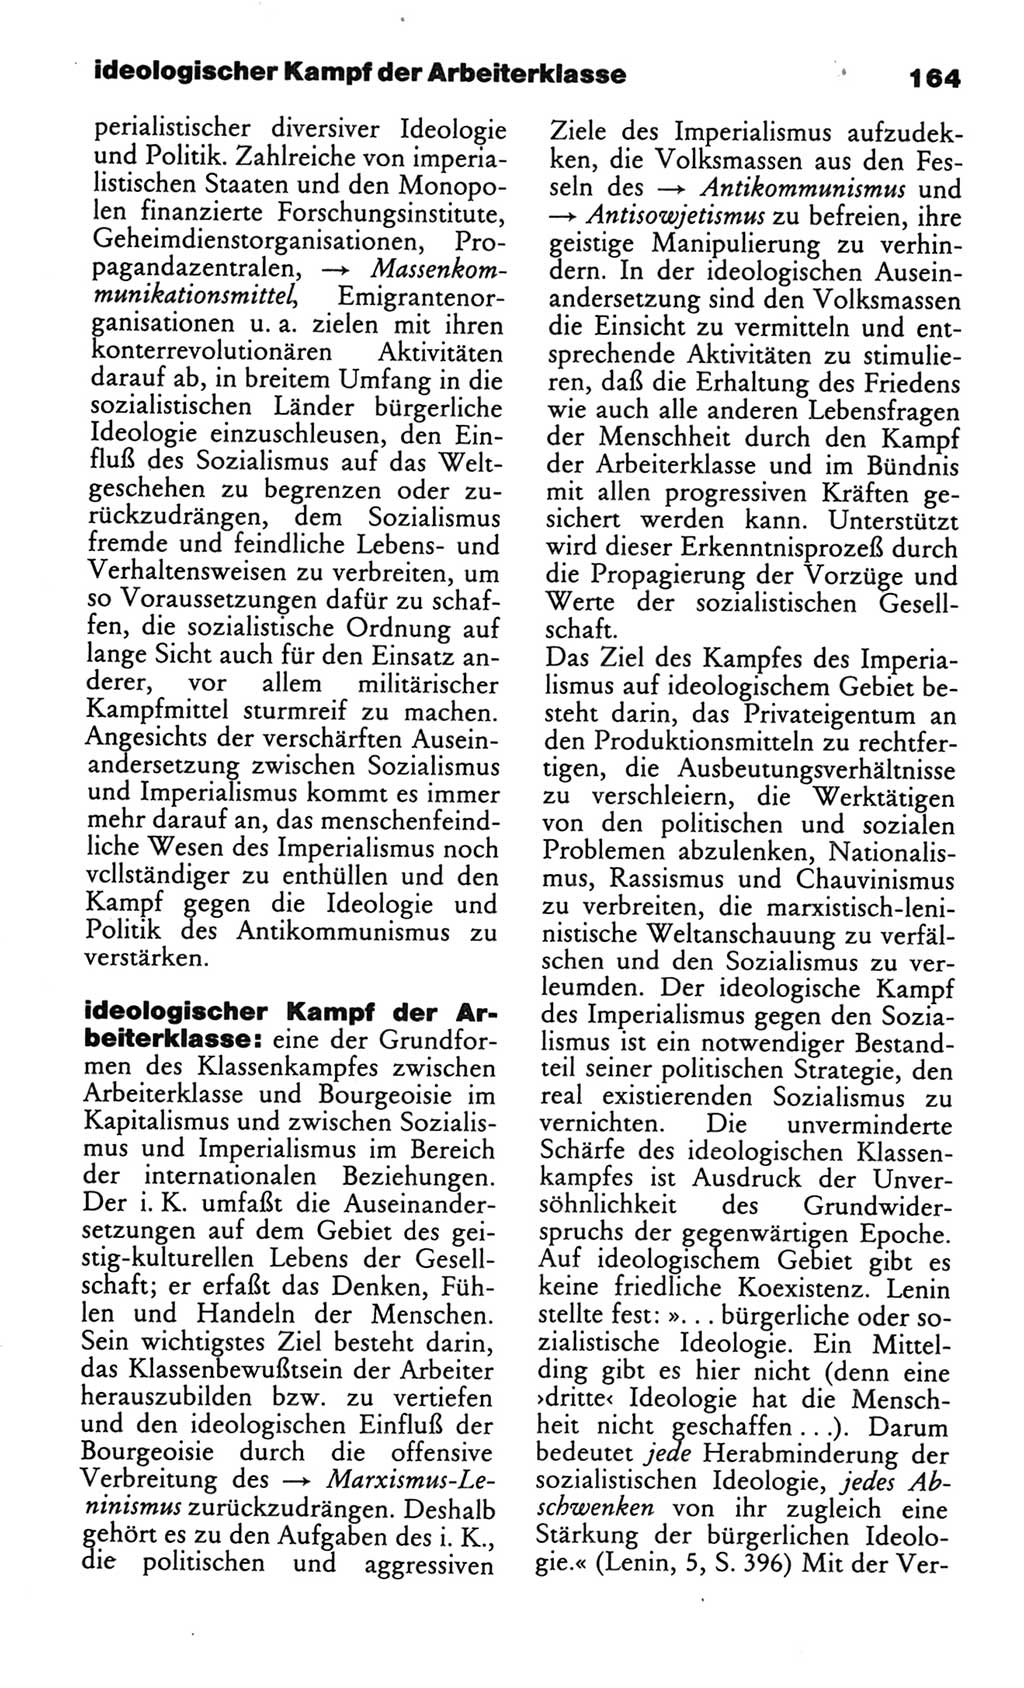 Wörterbuch des wissenschaftlichen Kommunismus [Deutsche Demokratische Republik (DDR)] 1982, Seite 164 (Wb. wiss. Komm. DDR 1982, S. 164)